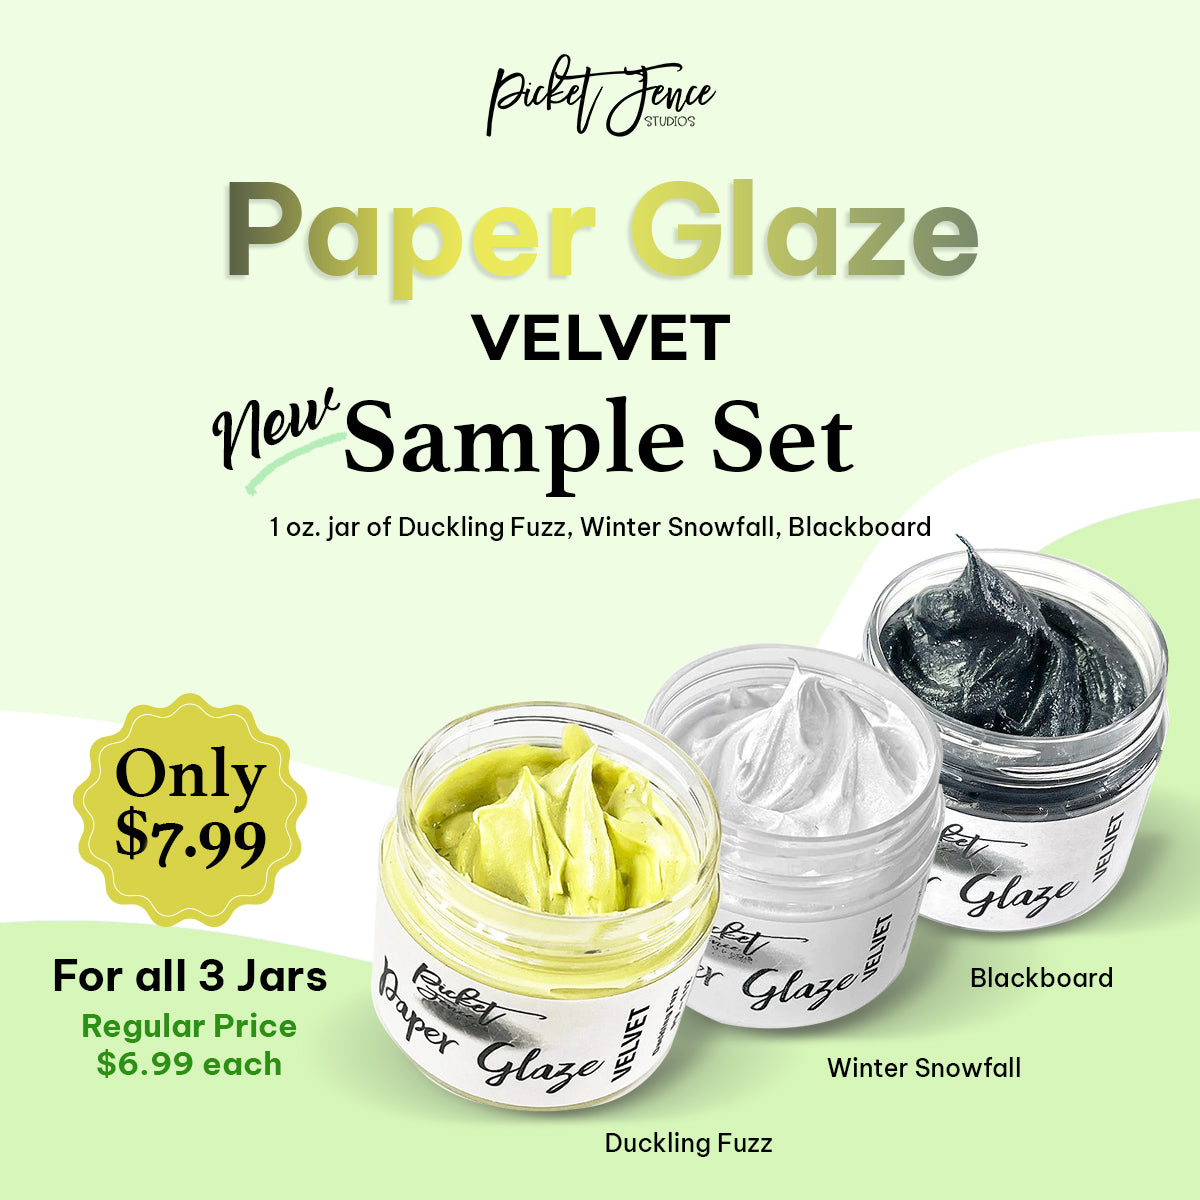 Paper Glaze VELVET Sampler Set